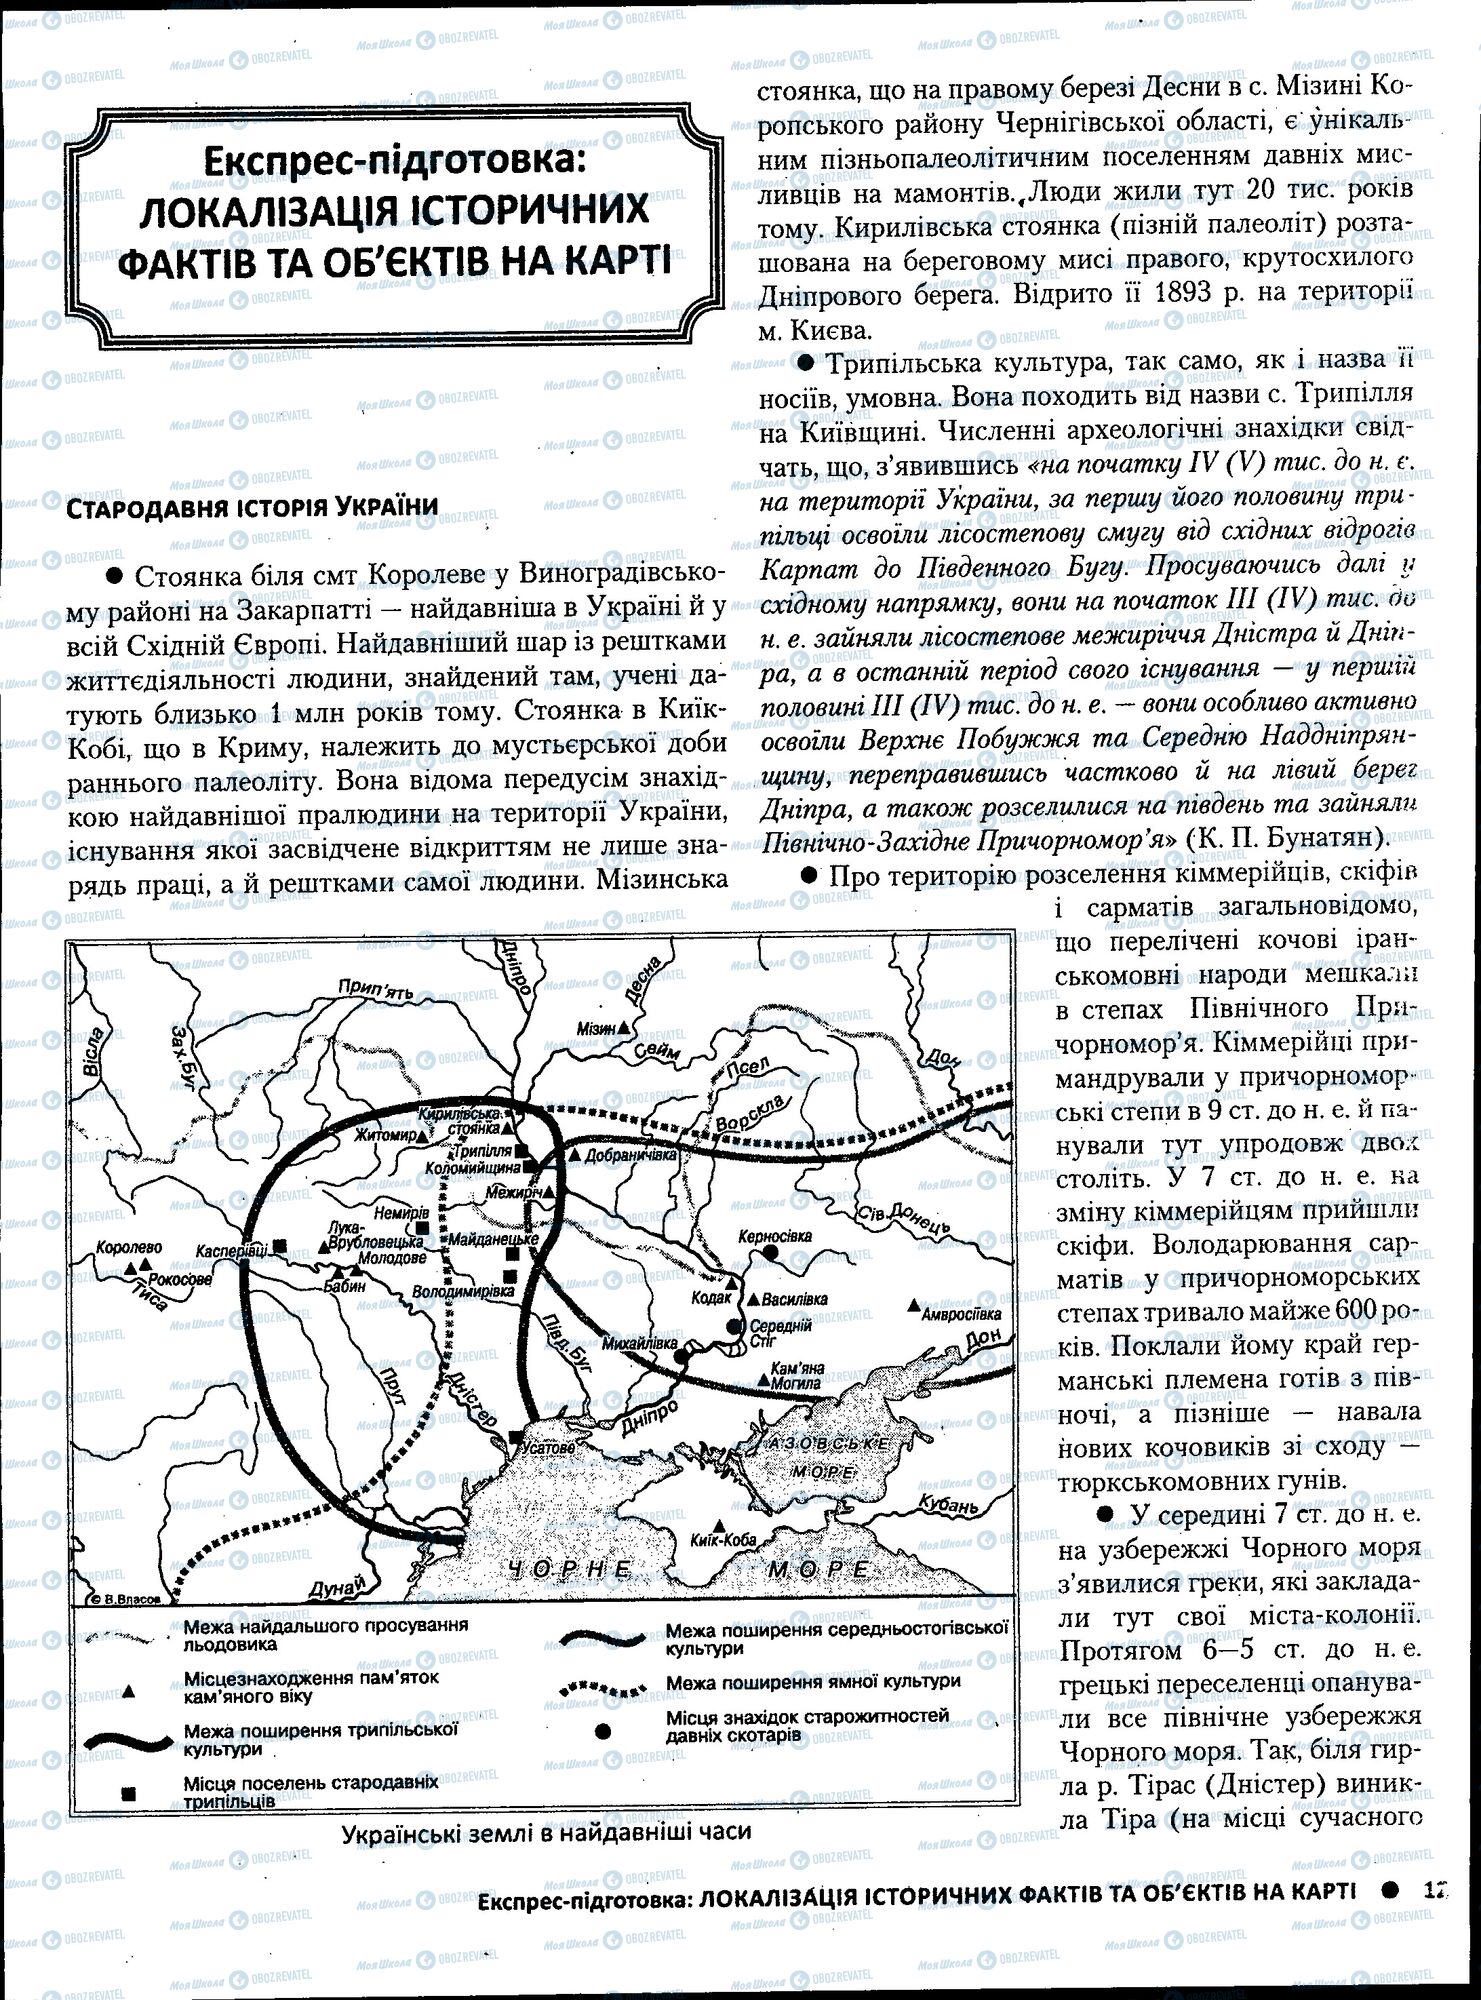 ЗНО История Украины 11 класс страница 129